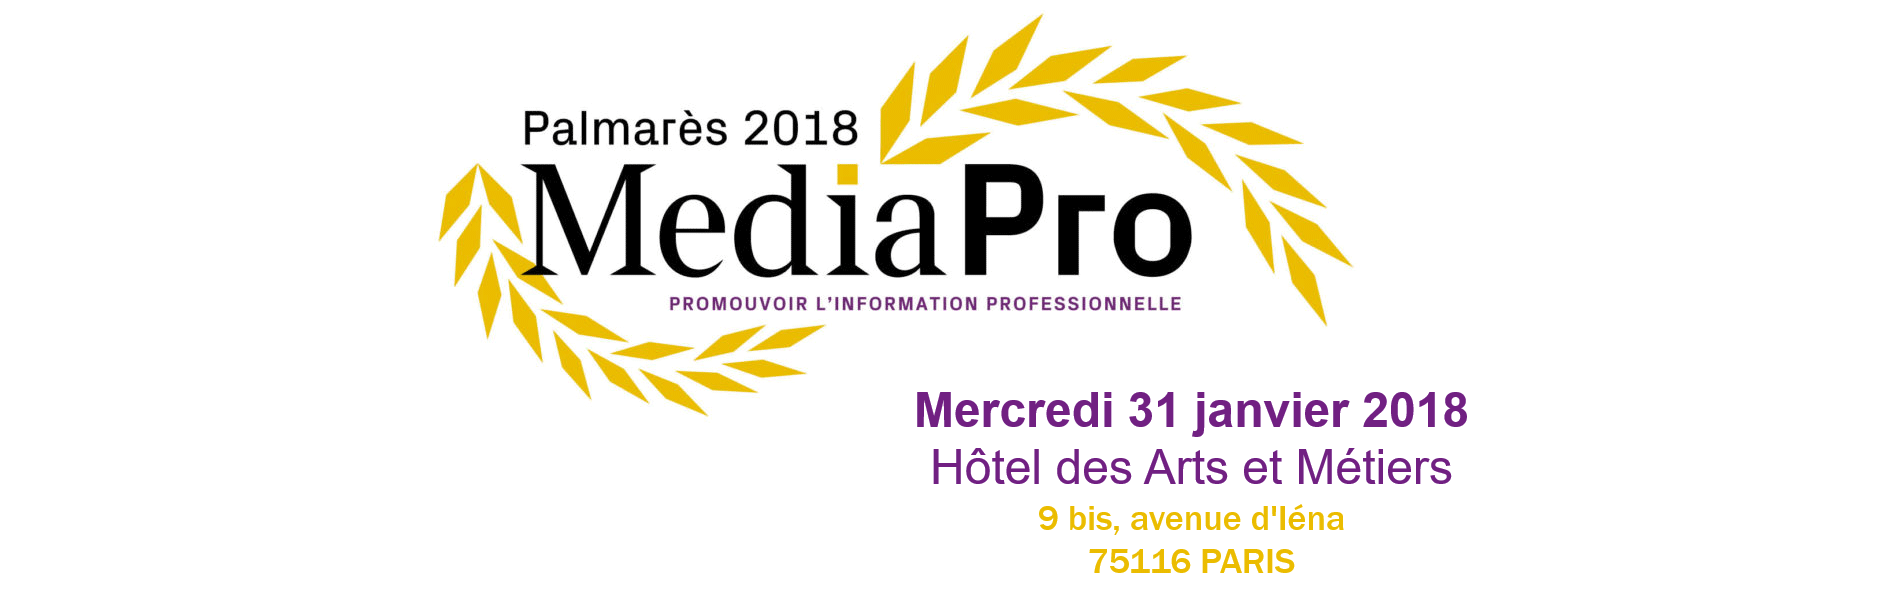 La Cérémonie de Remise des Prix du Palmarès MediaPro 2018 aura lieu le 31 janvier